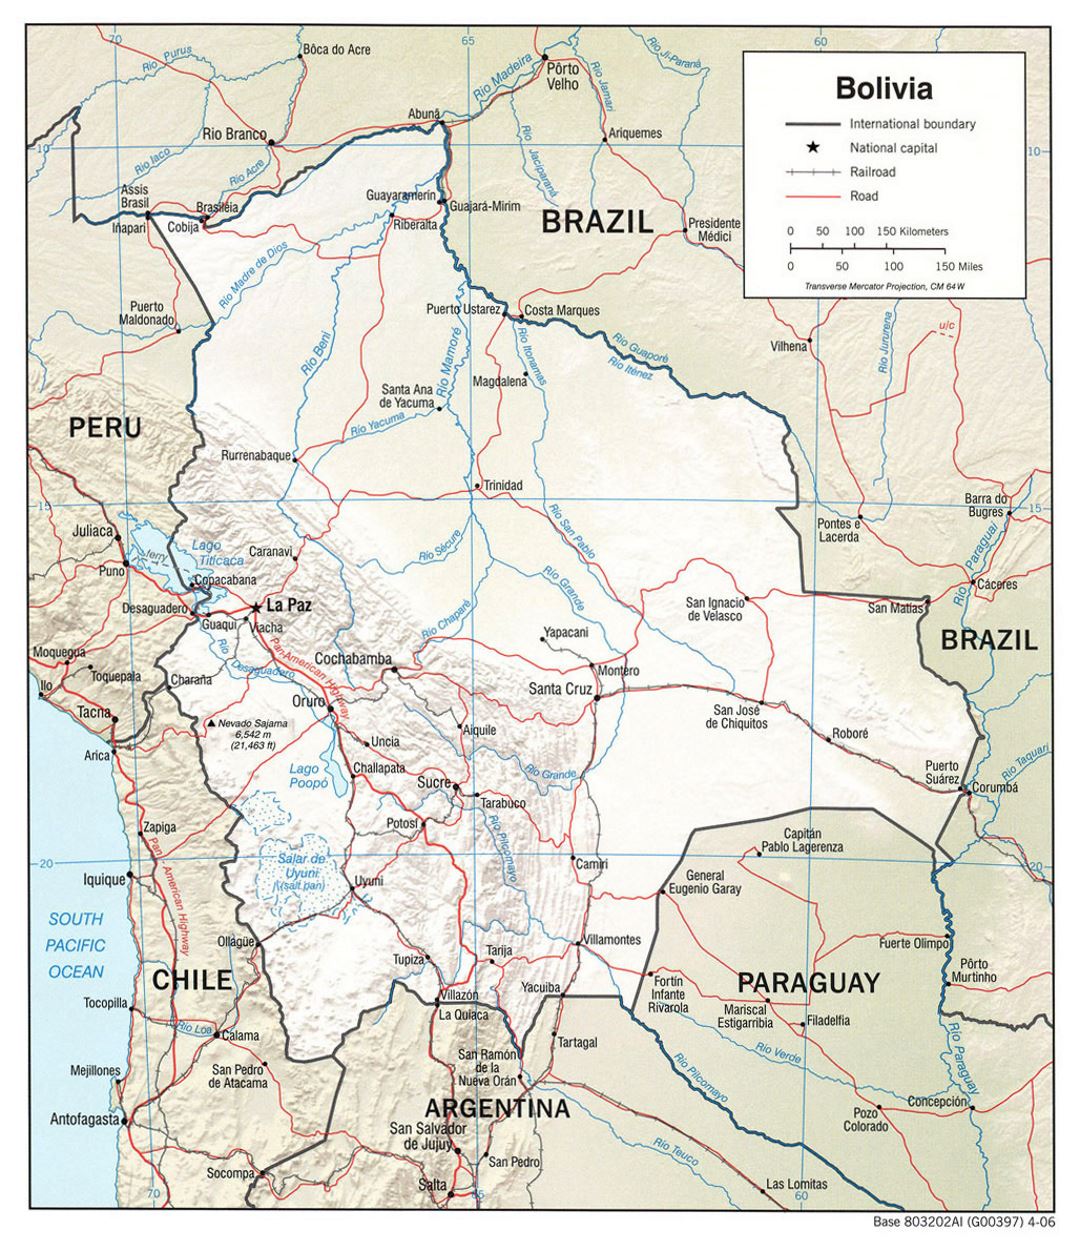 Grande mapa político de Bolivia con socorro, carreteras y grandes ciudades - 2006